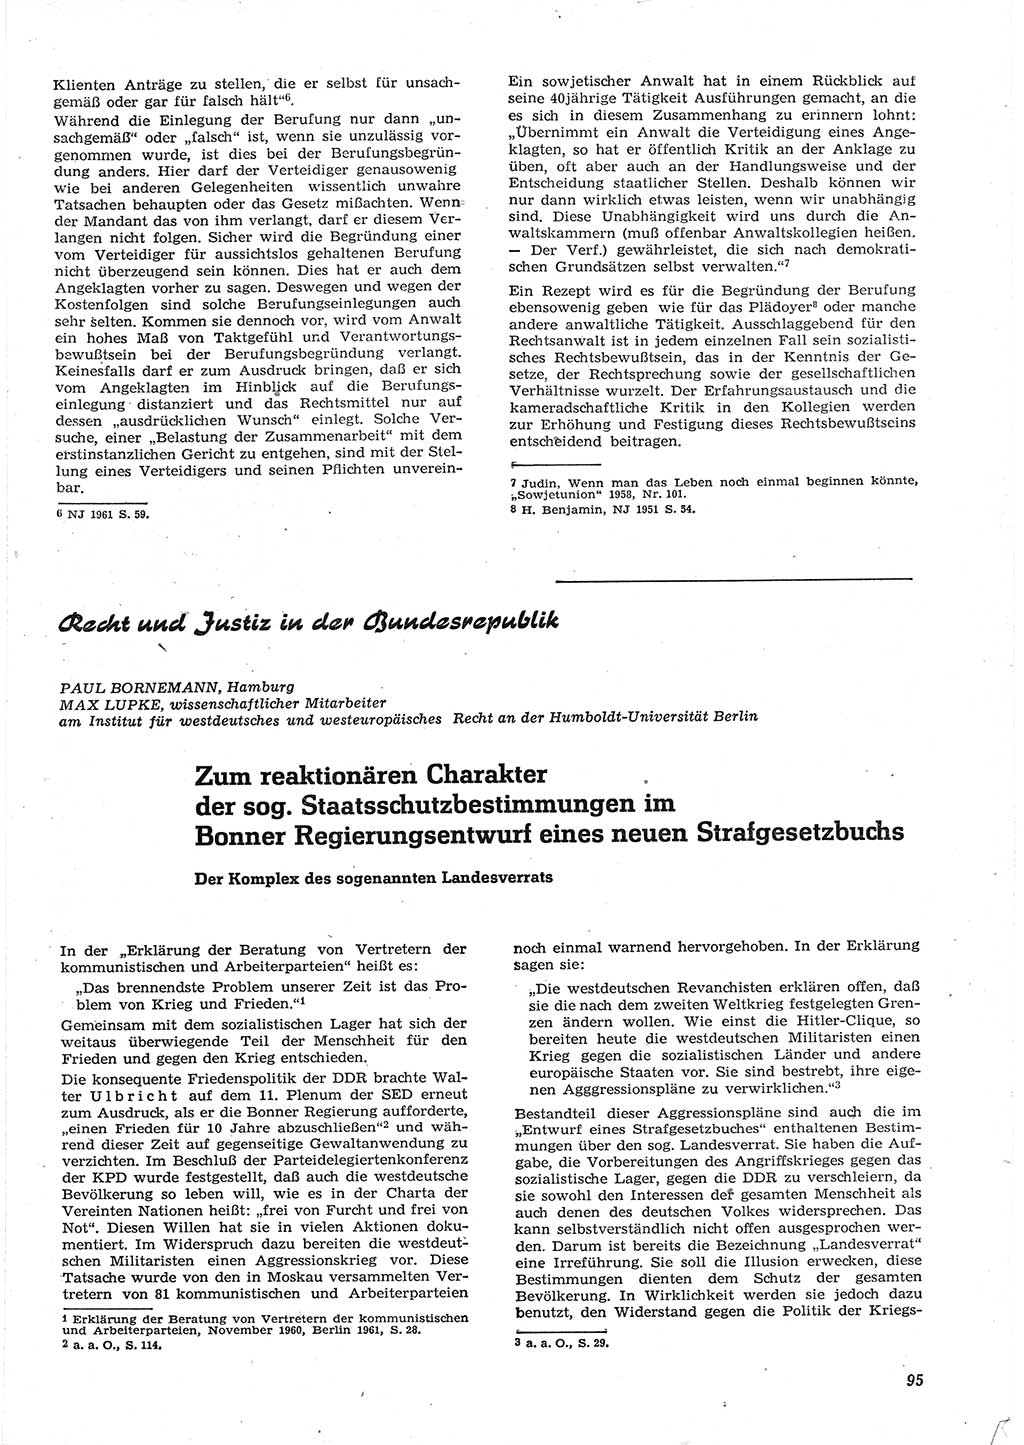 Neue Justiz (NJ), Zeitschrift für Recht und Rechtswissenschaft [Deutsche Demokratische Republik (DDR)], 15. Jahrgang 1961, Seite 95 (NJ DDR 1961, S. 95)